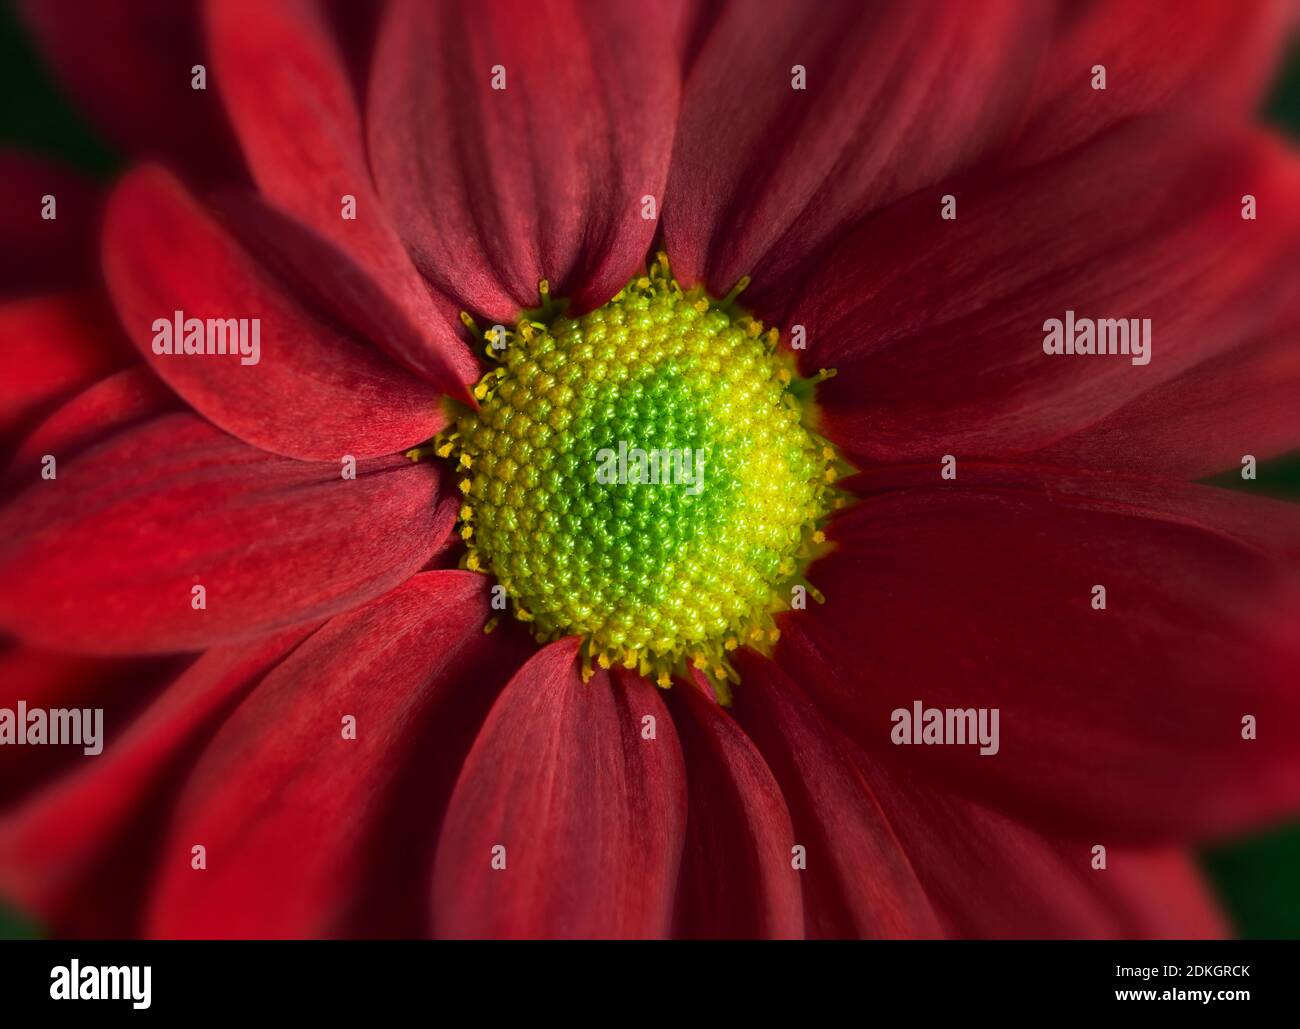 Nahaufnahme Foto von roten Gänseblümchen Gerbera Blume zeigt die Staubblätter und Blütenblätter Stockfoto